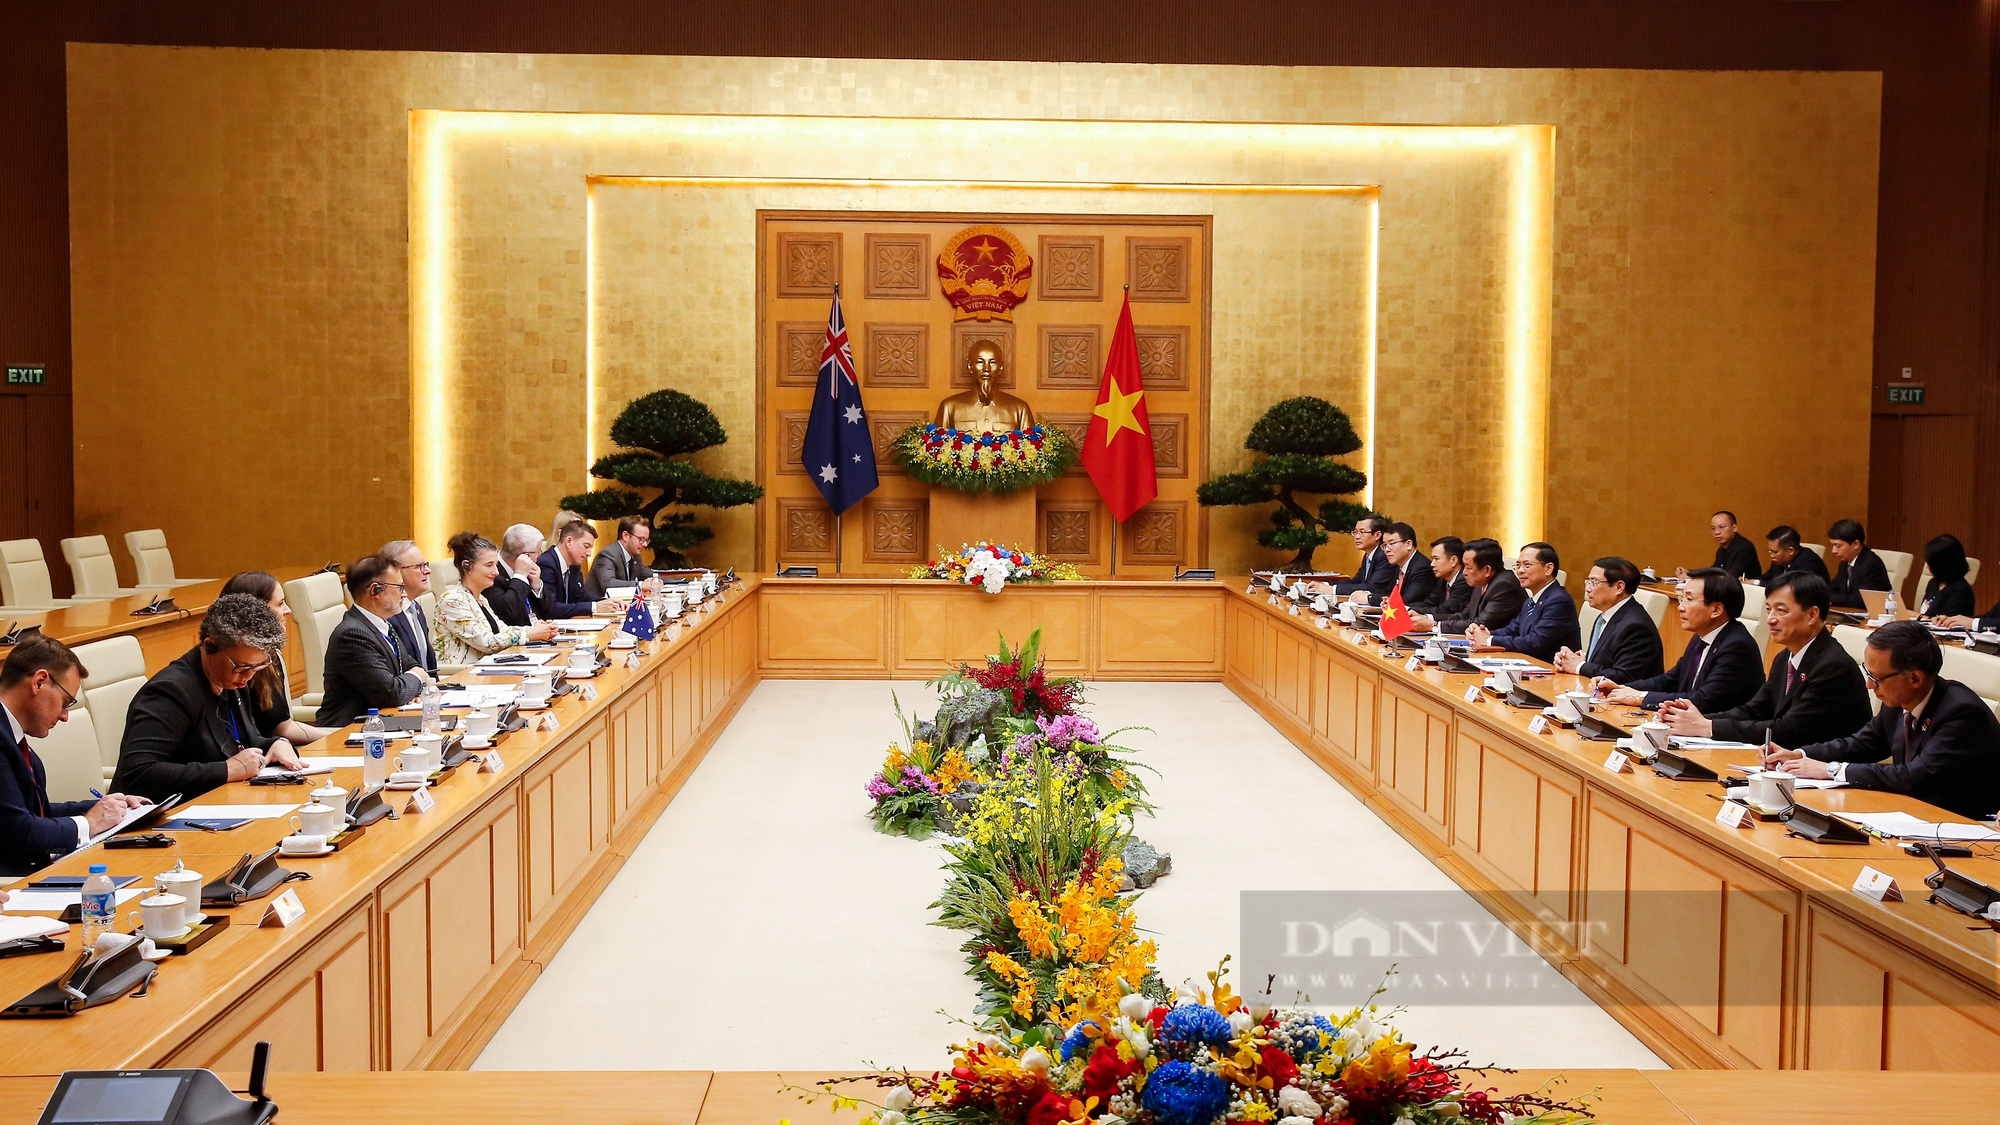 Australia hỗ trợ Việt Nam 105 triệu AUD cho hợp tác cơ sở hạ tầng, chuyển đổi năng lượng - Ảnh 3.